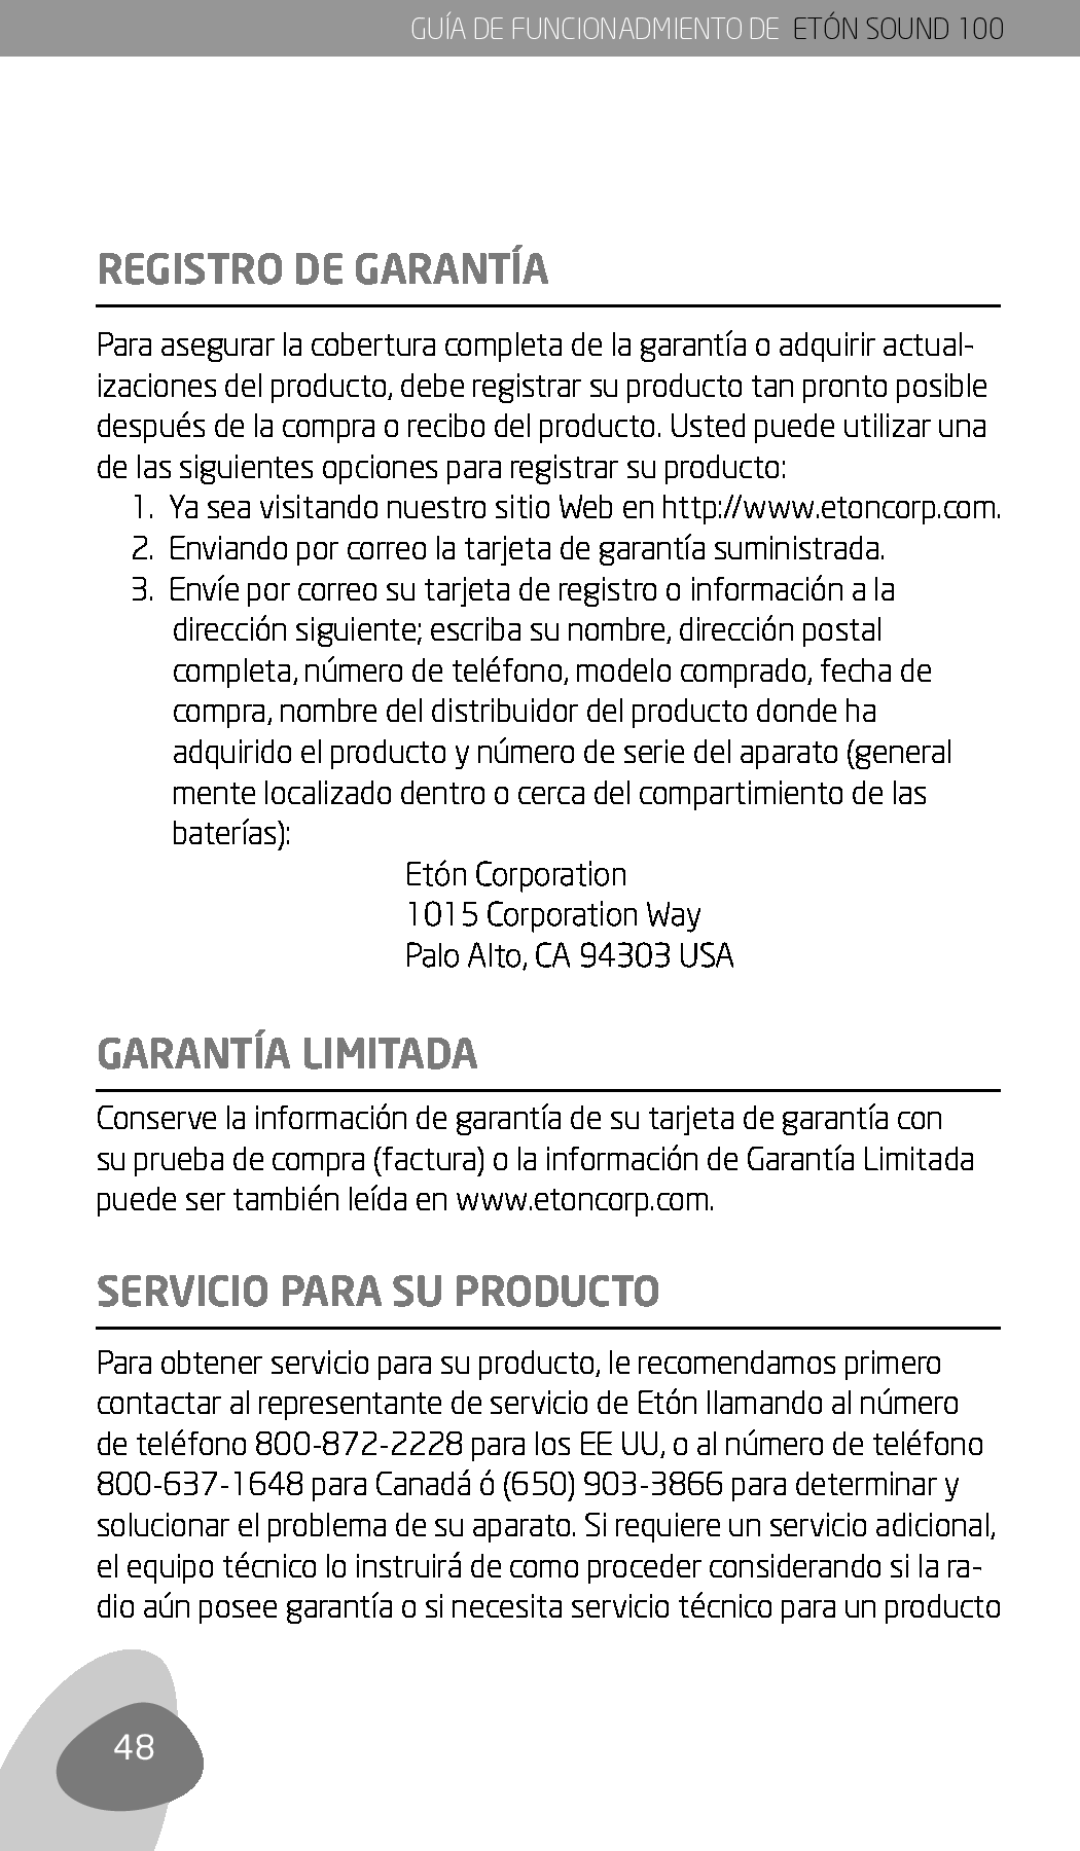 Eton Sound 100 owner manual Registro De Garantía, Garantía Limitada, Servicio Para Su Producto, Etón Corporation 